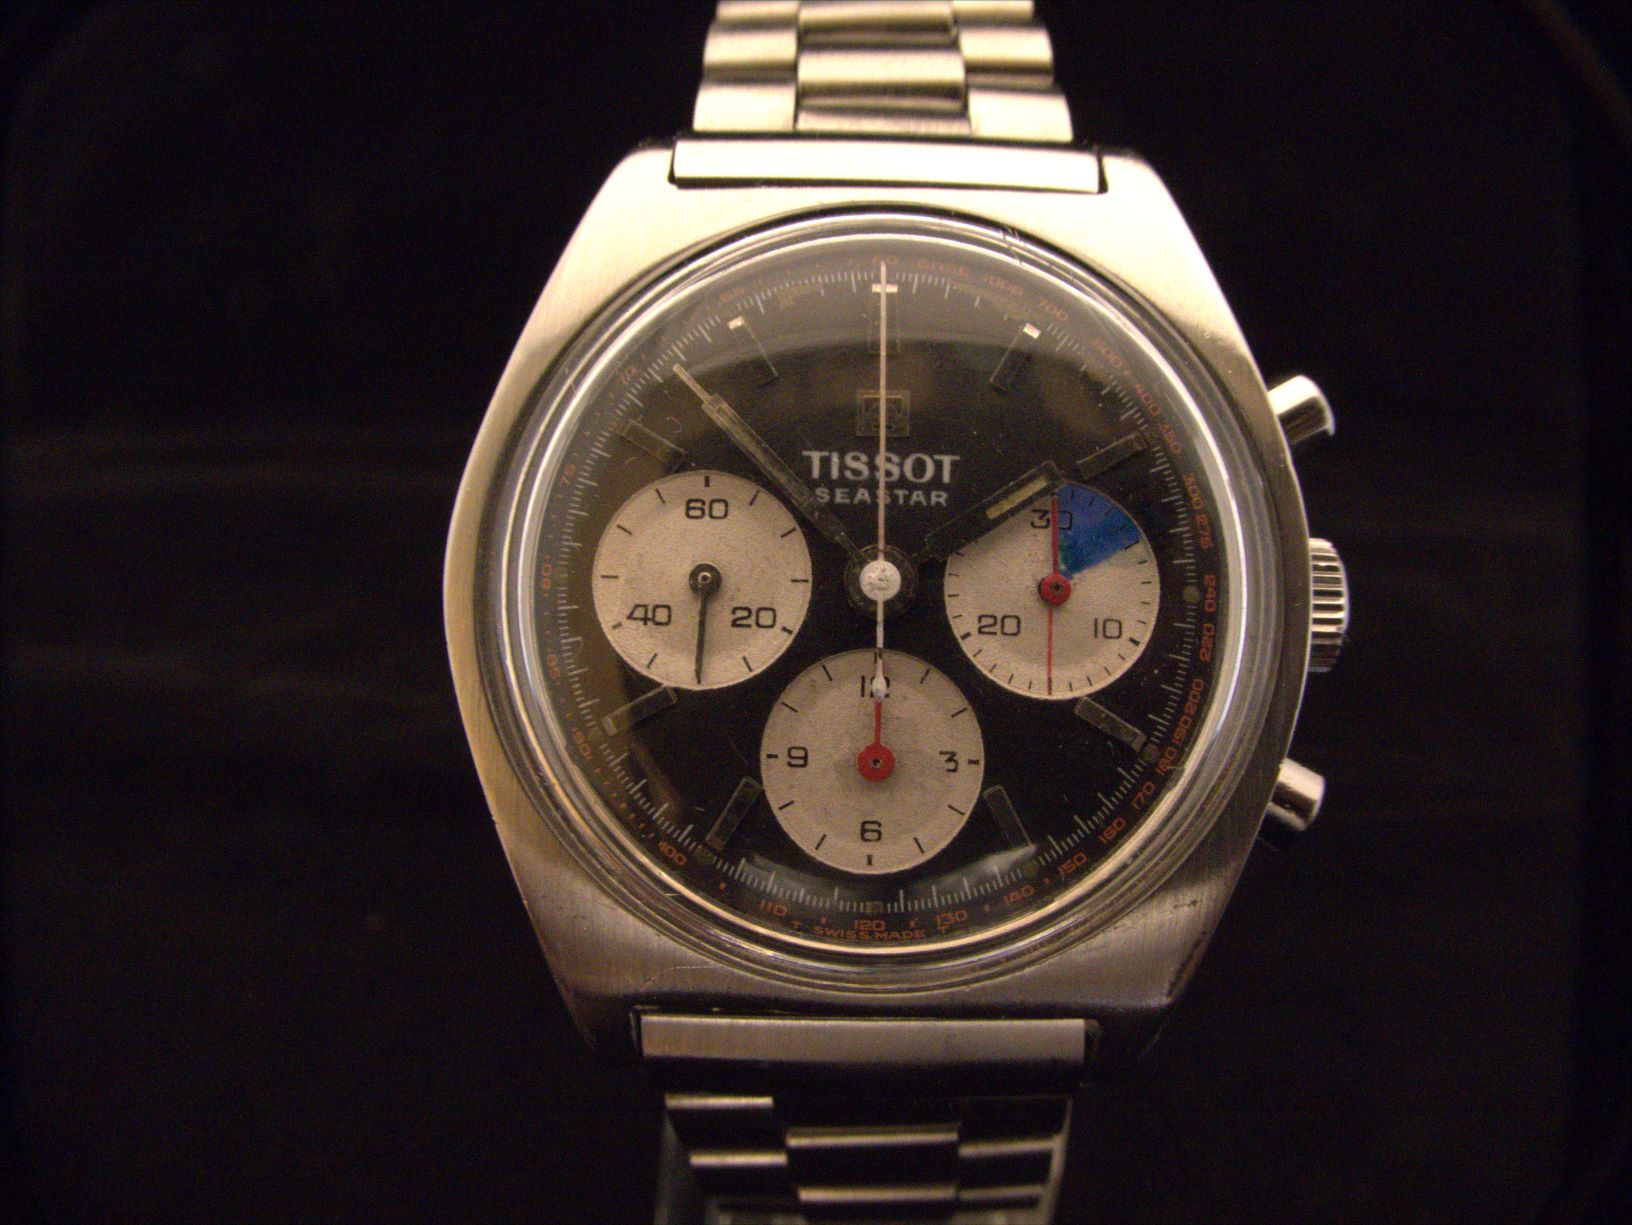 Tissot – アンティーク時計なら名古屋の益源(みつげん)